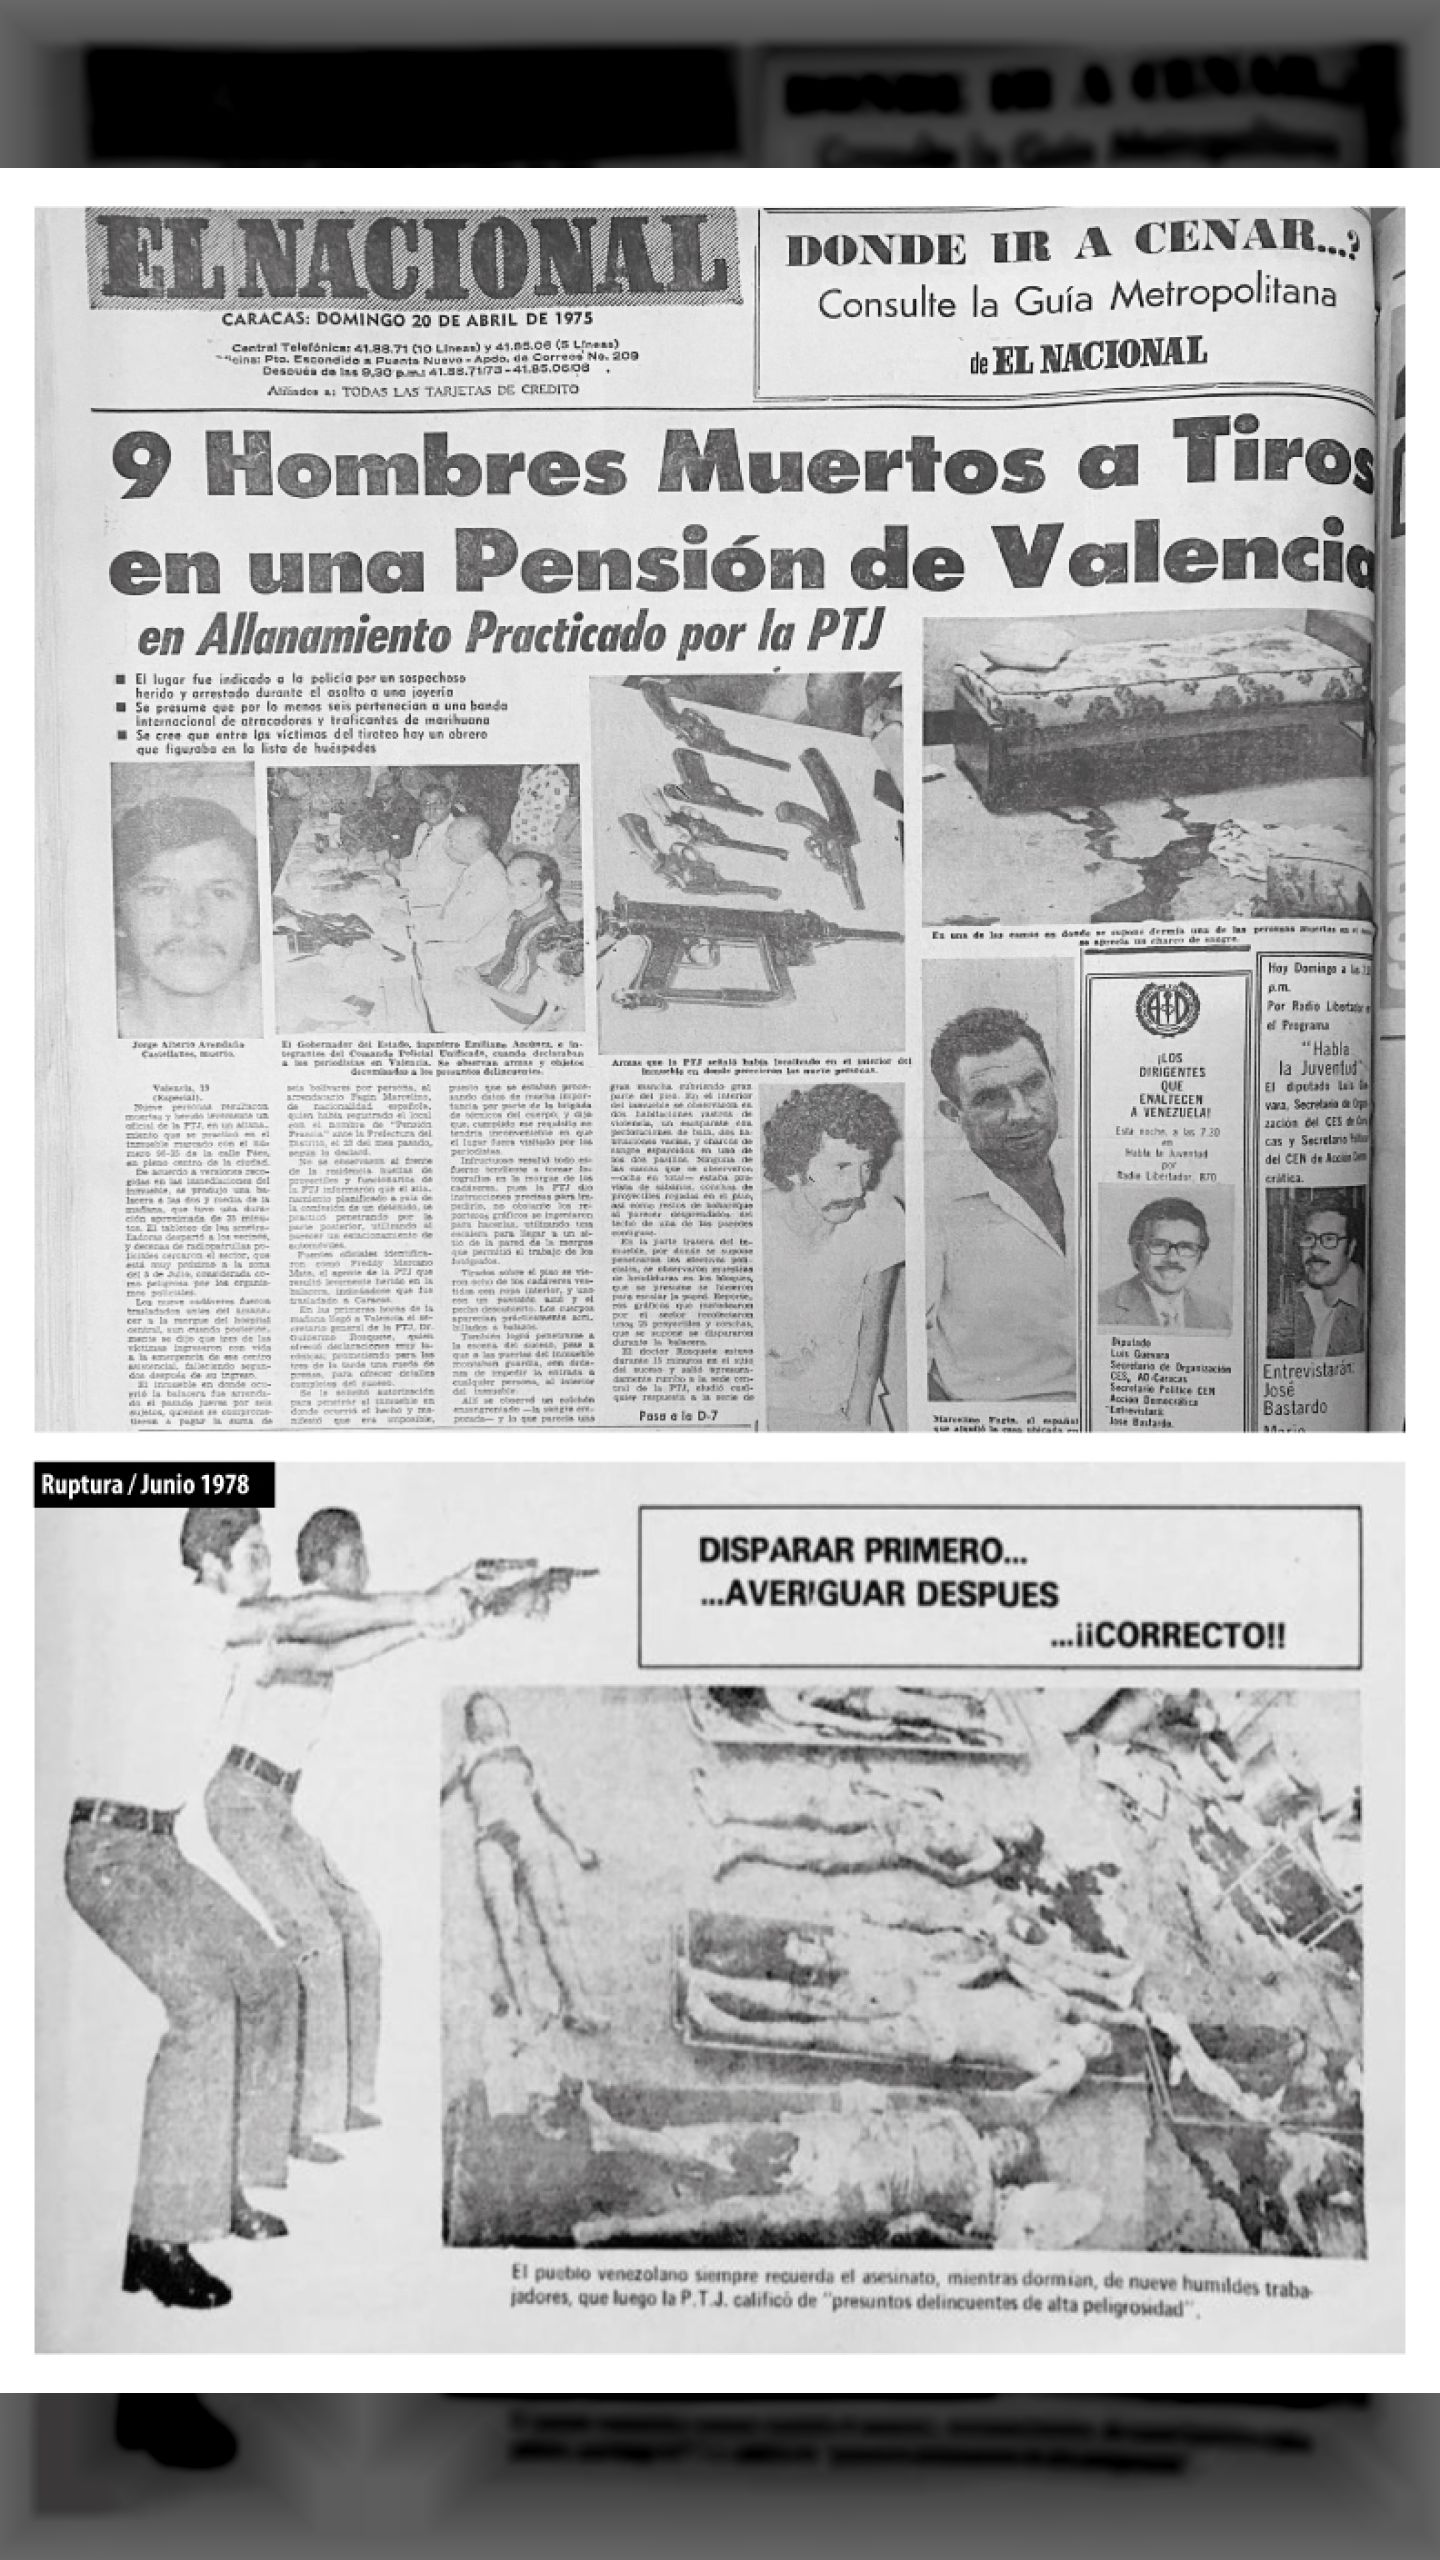 La Masacre de Valencia - Mientras dormían nueve obreros fueron acribillados por funcionarios élite del escuadrón GATO (ELNACIONAL, 20 de abril de 1975)